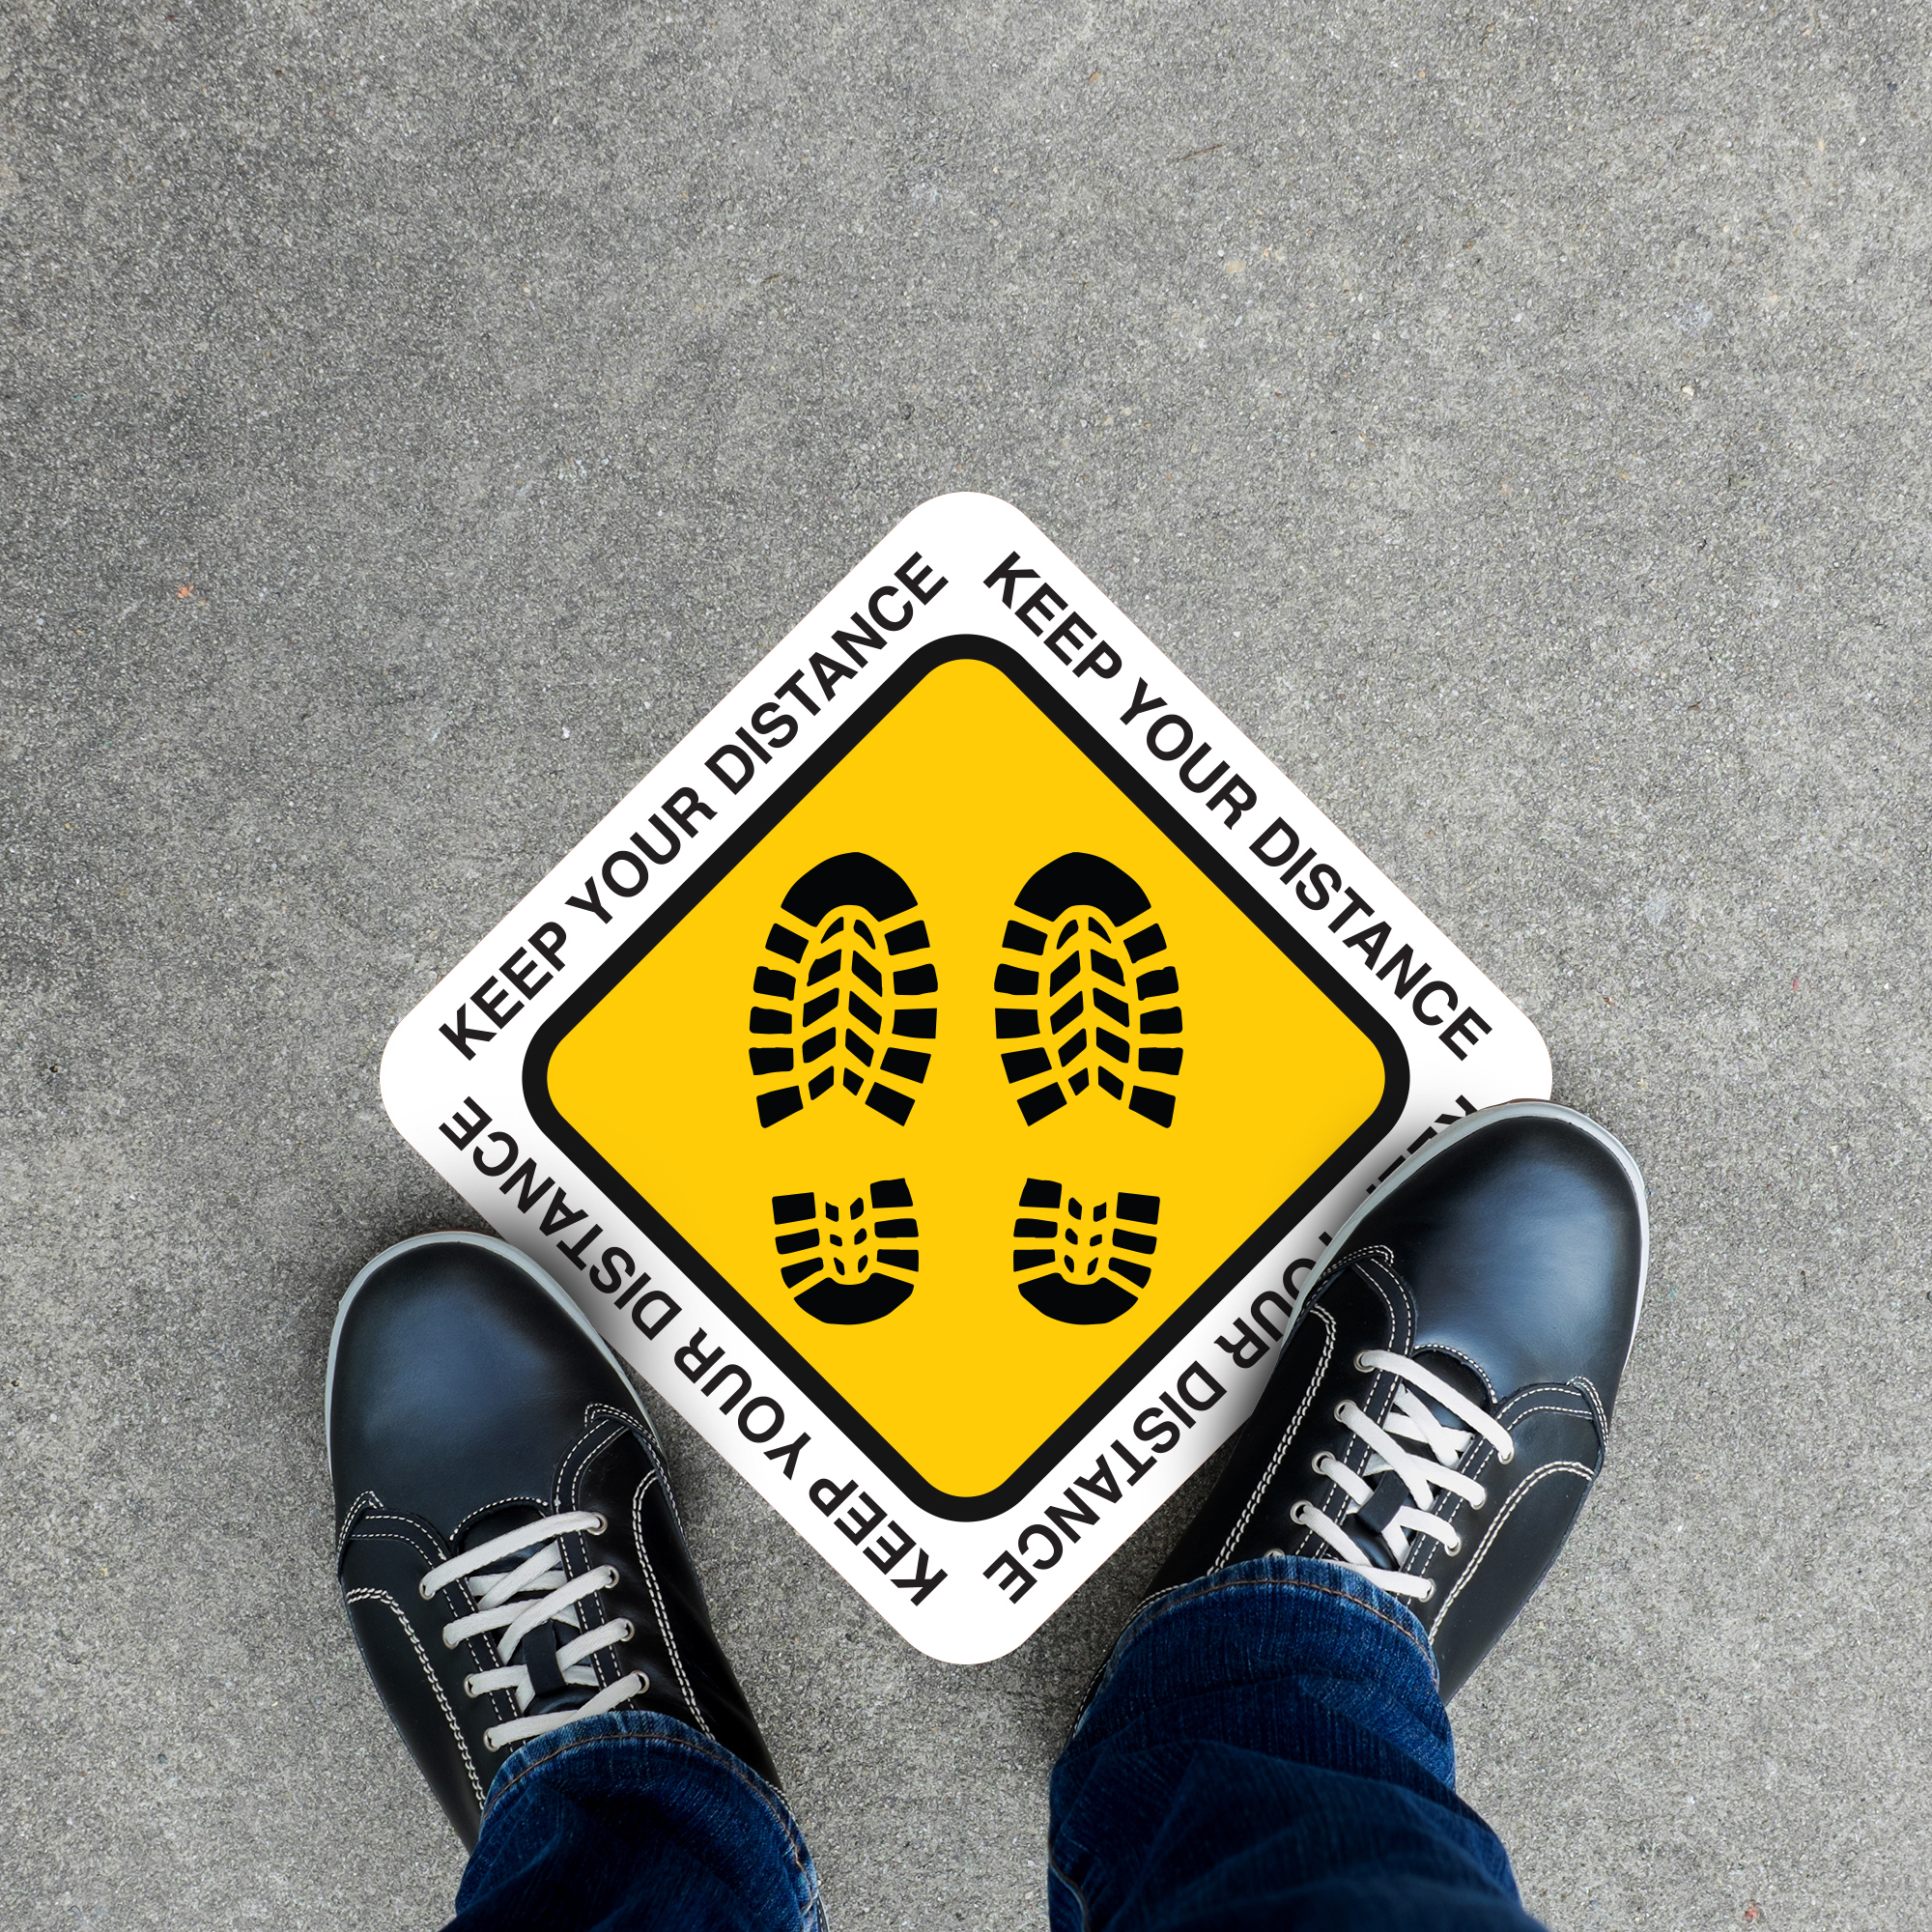 Keep Your Distance Hazard Floor Decal - 17 inch